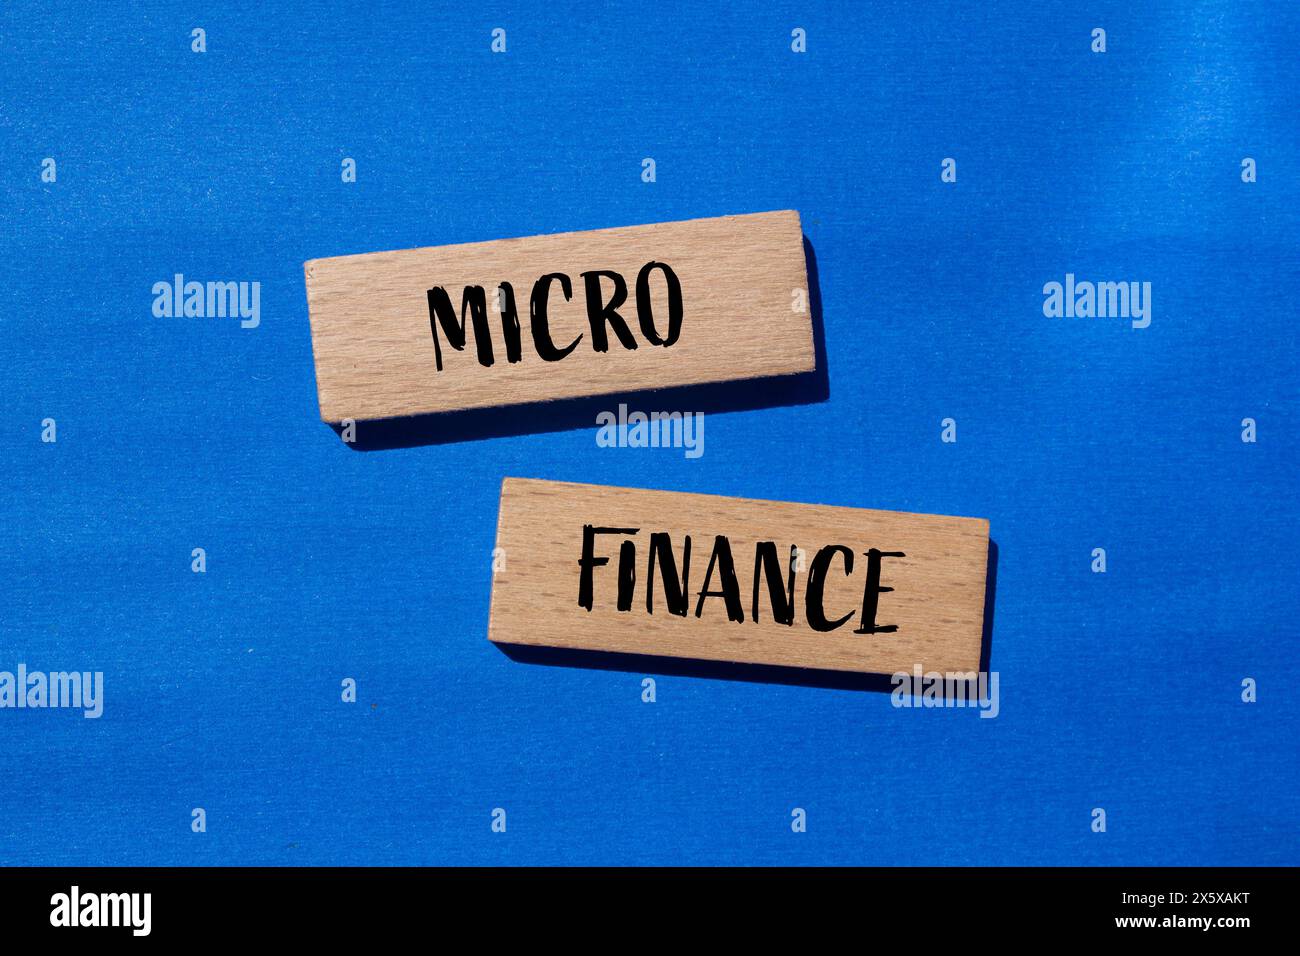 Wörter aus dem Mikrofinanzbereich auf Holzblöcken mit blauem Hintergrund. Konzeptionelles Geschäftssymbol für Mikrofinanzen. Kopierbereich. Stockfoto